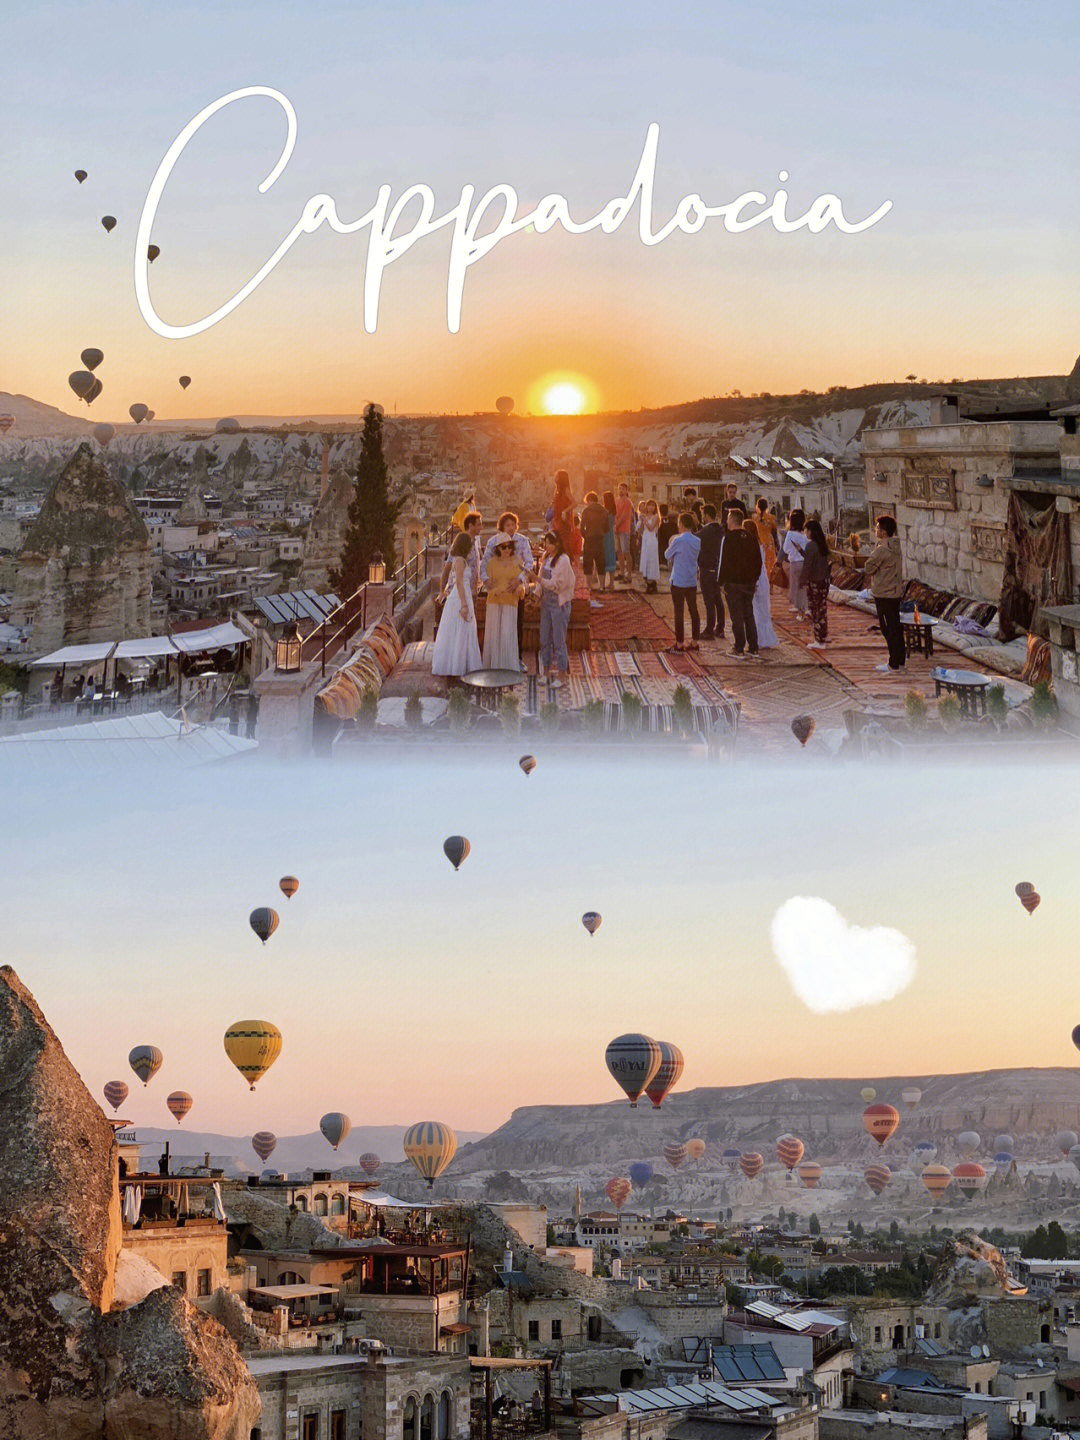 想要带你去浪漫的土耳其cappadocia